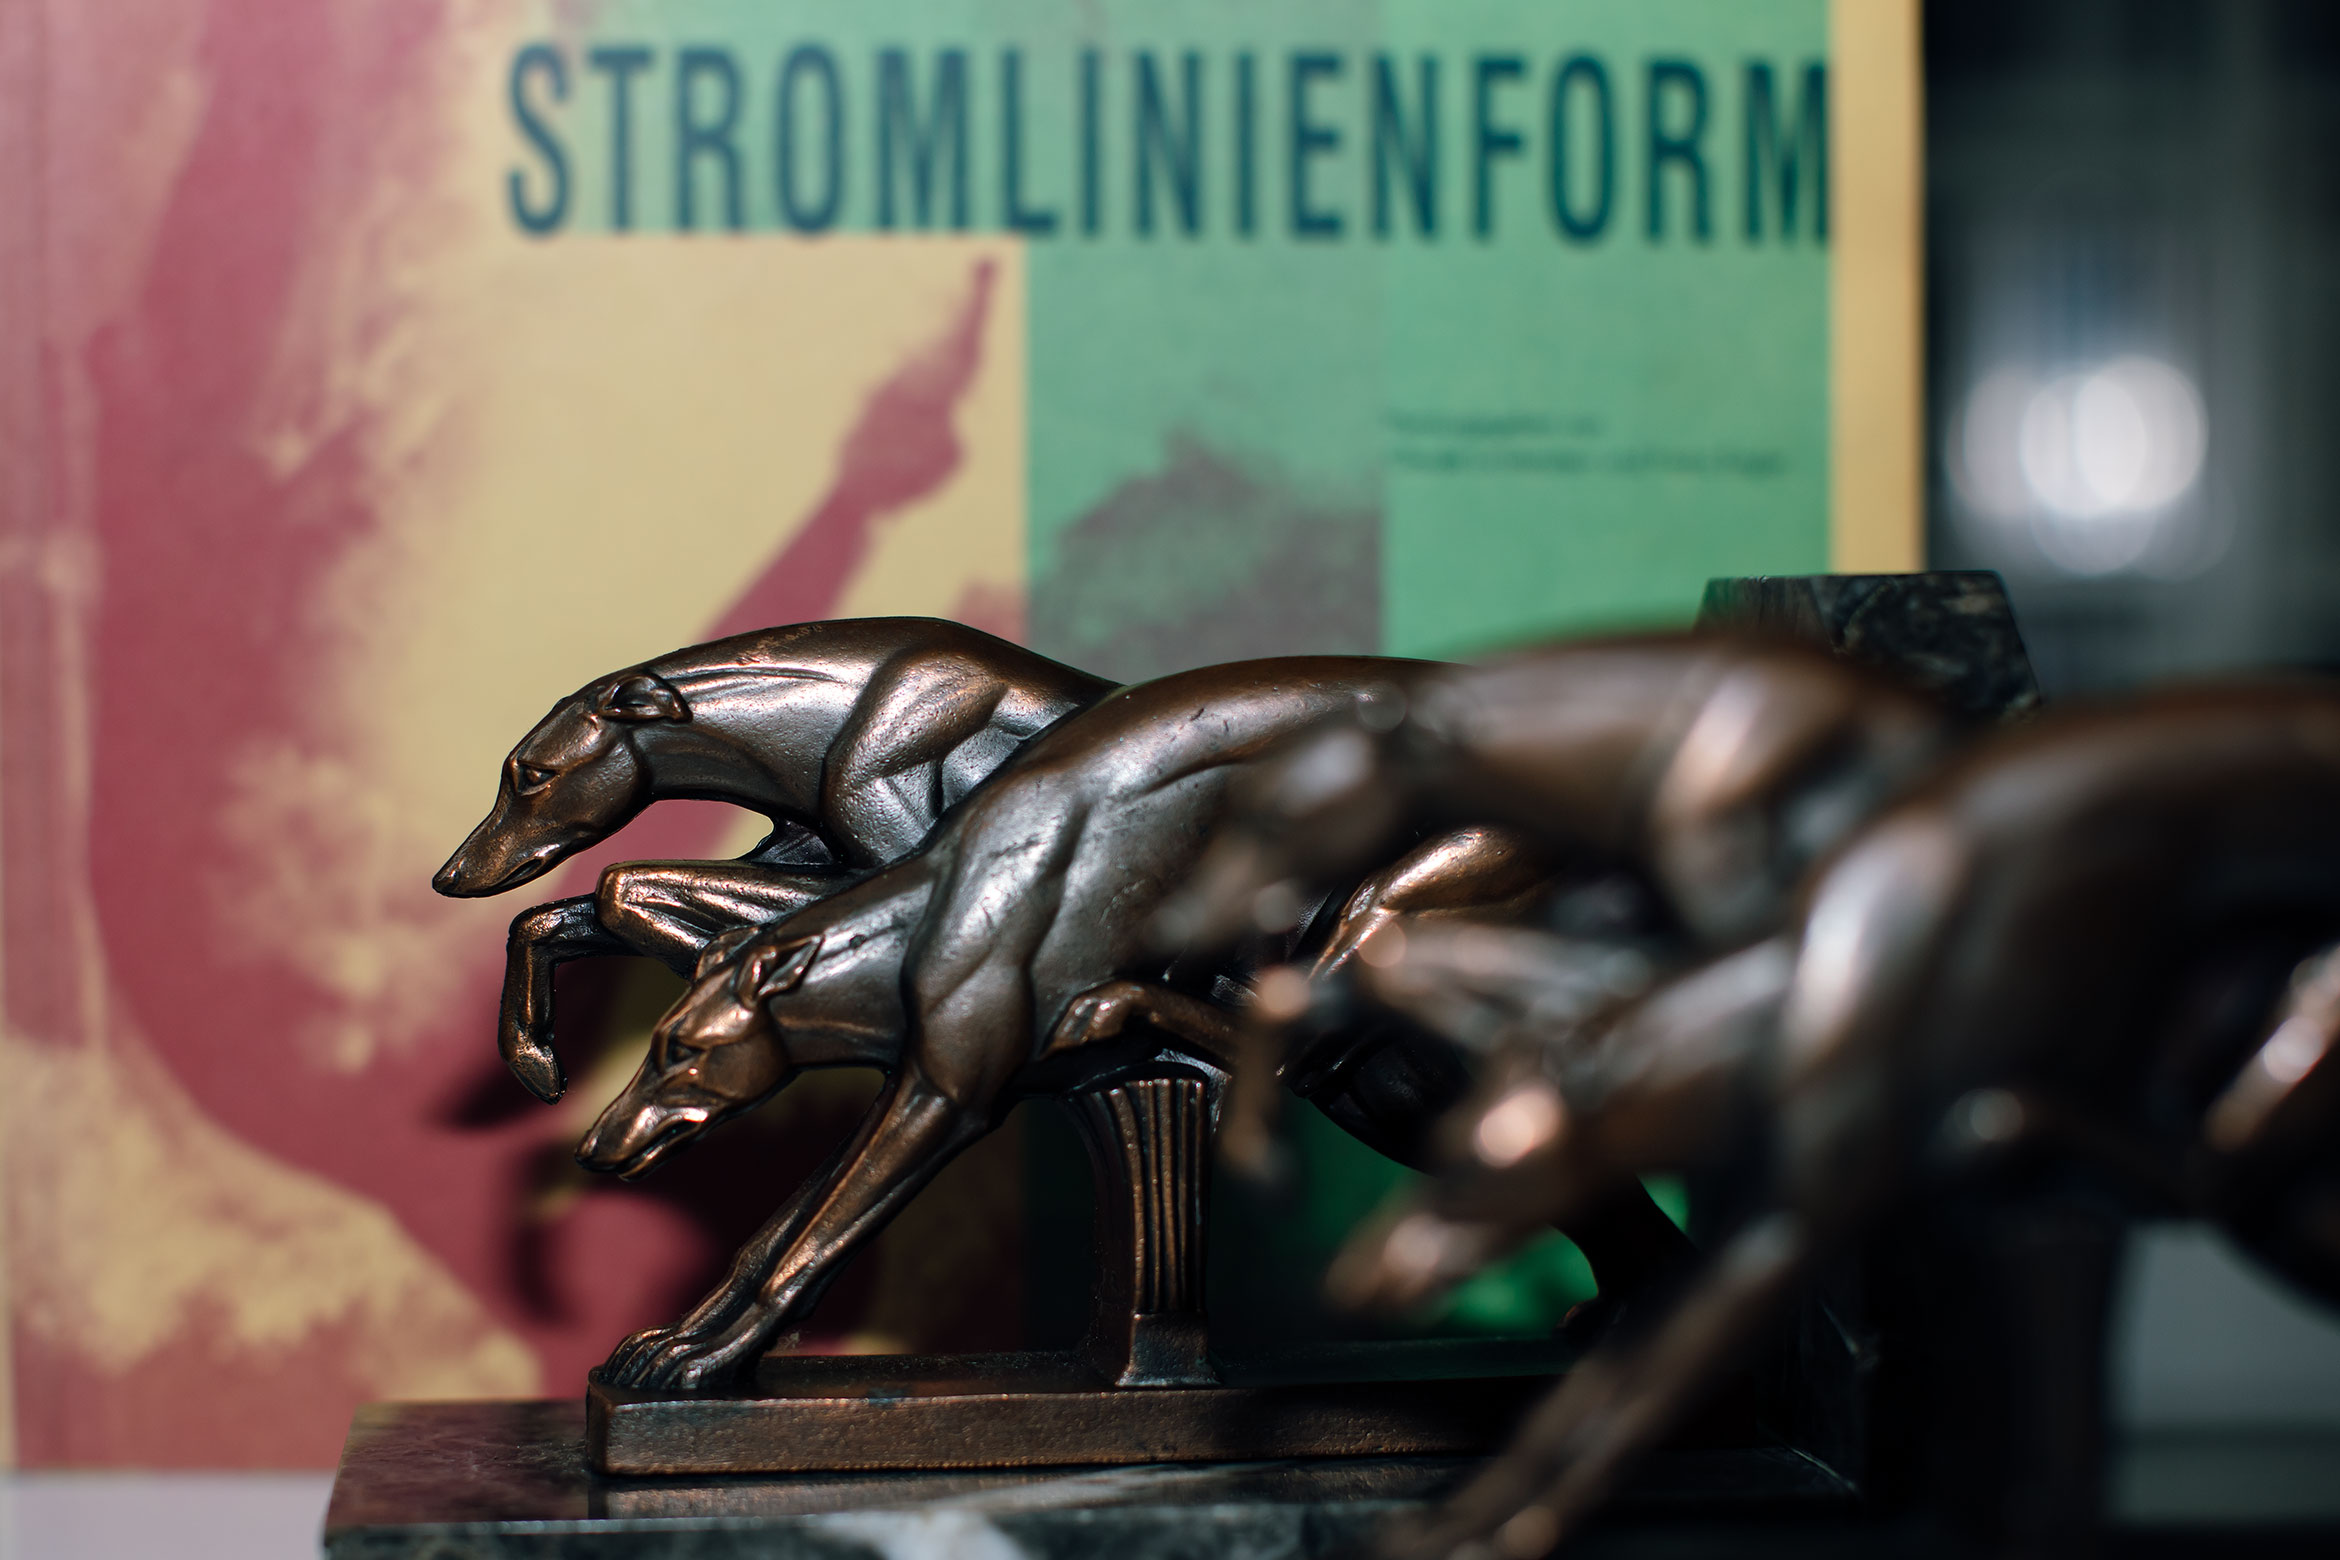 Meine Greyhounds aus dem Art Deco werden ab heute ein paar meiner Lieblingsbücher stützen. "Stromlinienform", ein Katalog zu einer Ausstellung, die vor vielen Jahren im Osthaus Museum Hagen gezeigt wurde, passt perfekt zu ihnen. 